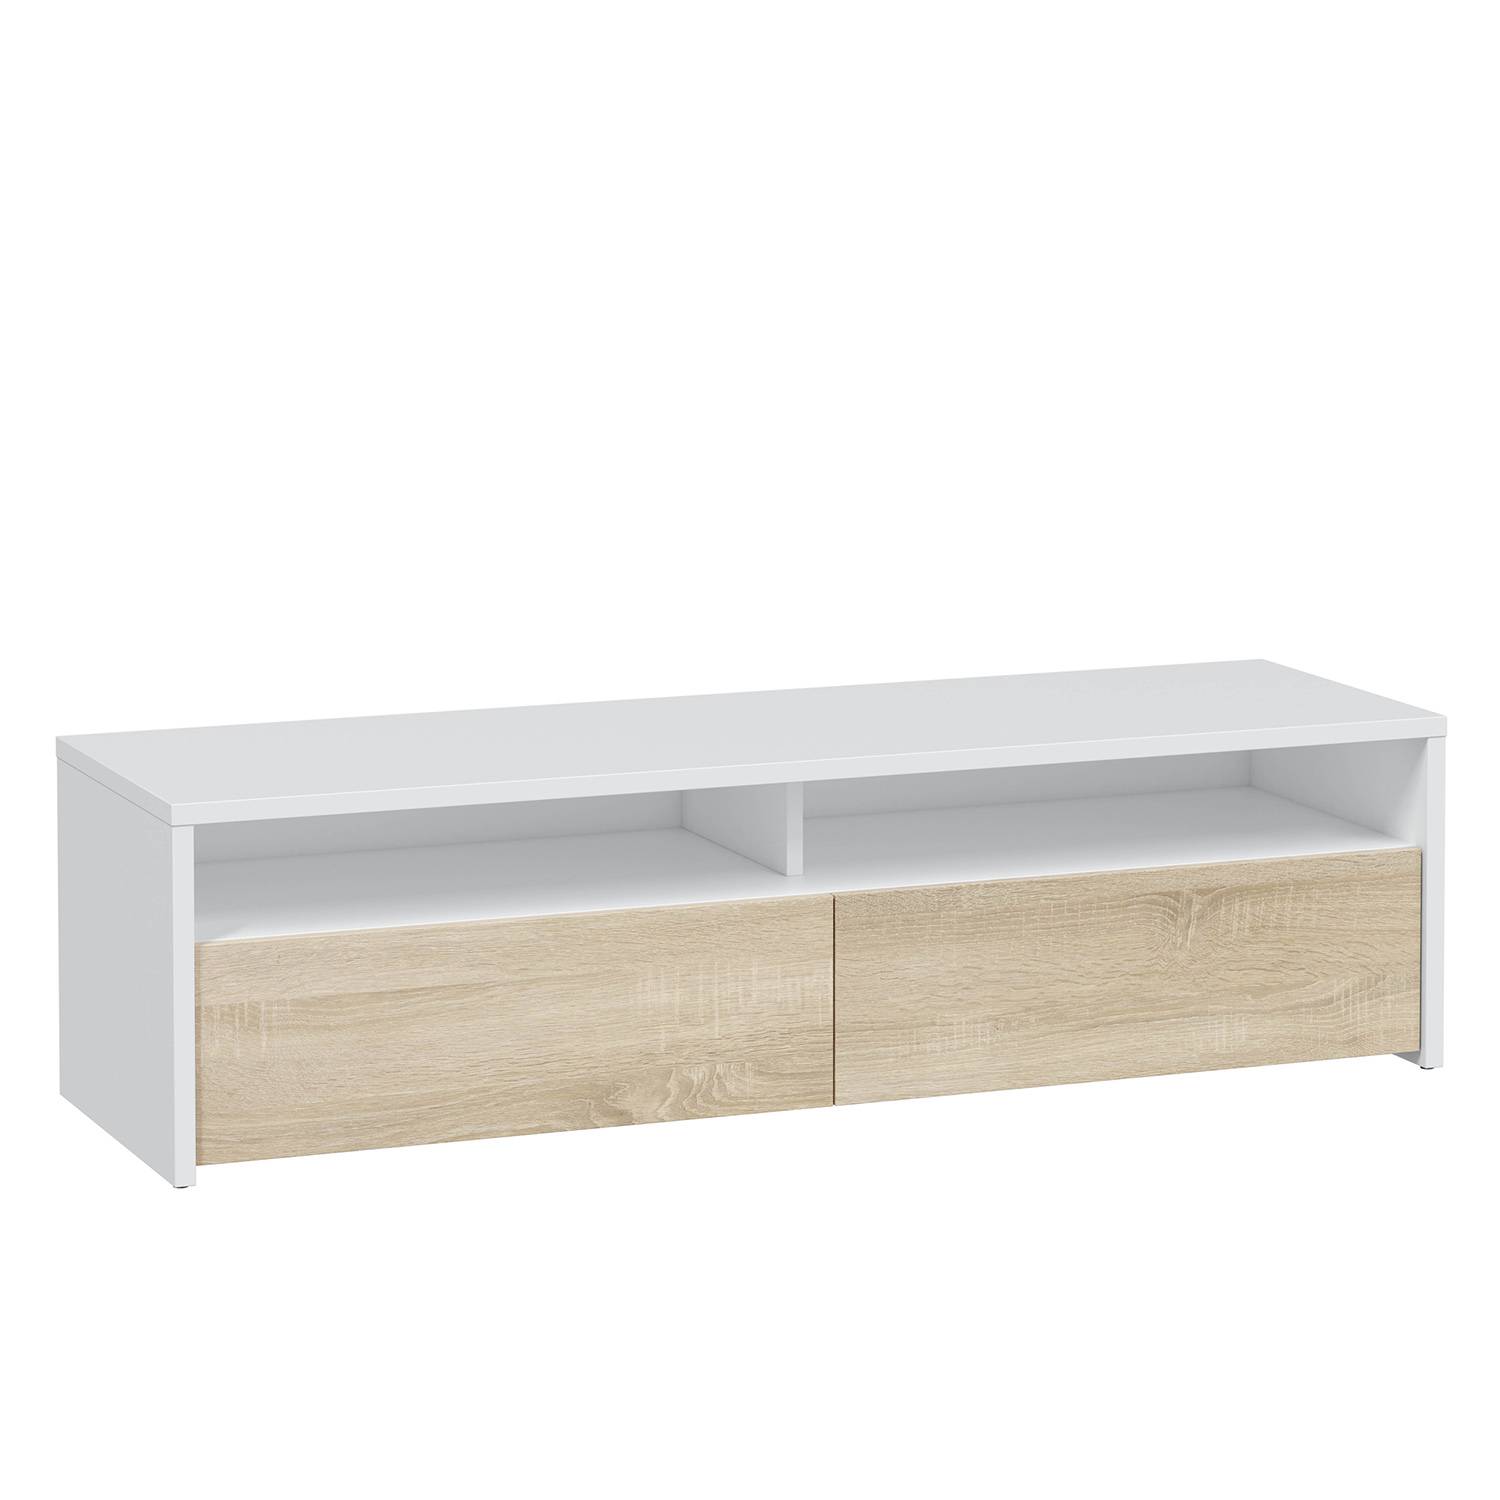 Ikea tiene el mueble de televisión barato minimalista ideal para el salón  que además es el más vendido de su catálogo